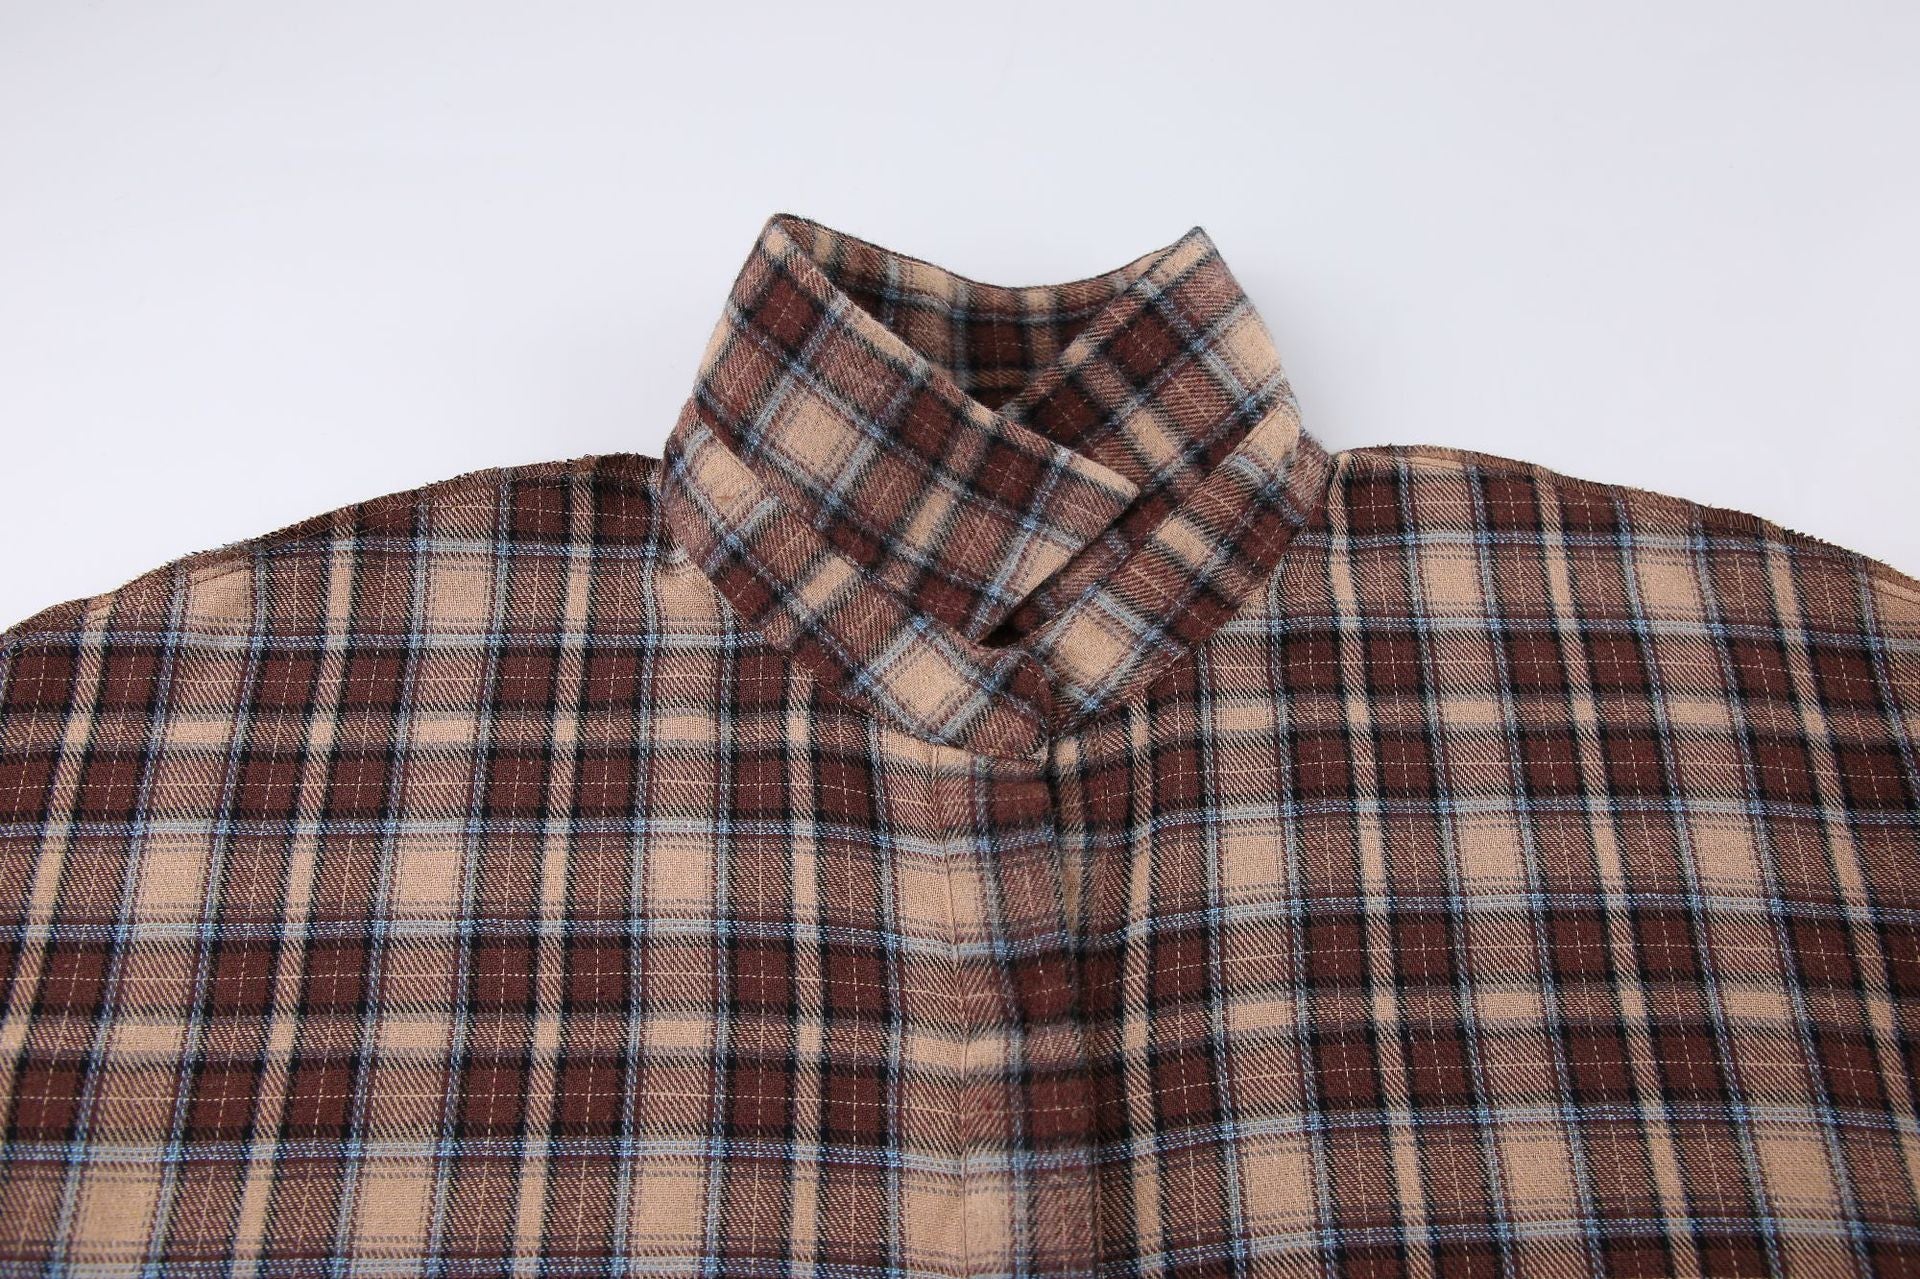 Designed Vintage Long Sleeves Plaid Shirts-Shirts & Tops-Khaki-S-Free Shipping Leatheretro